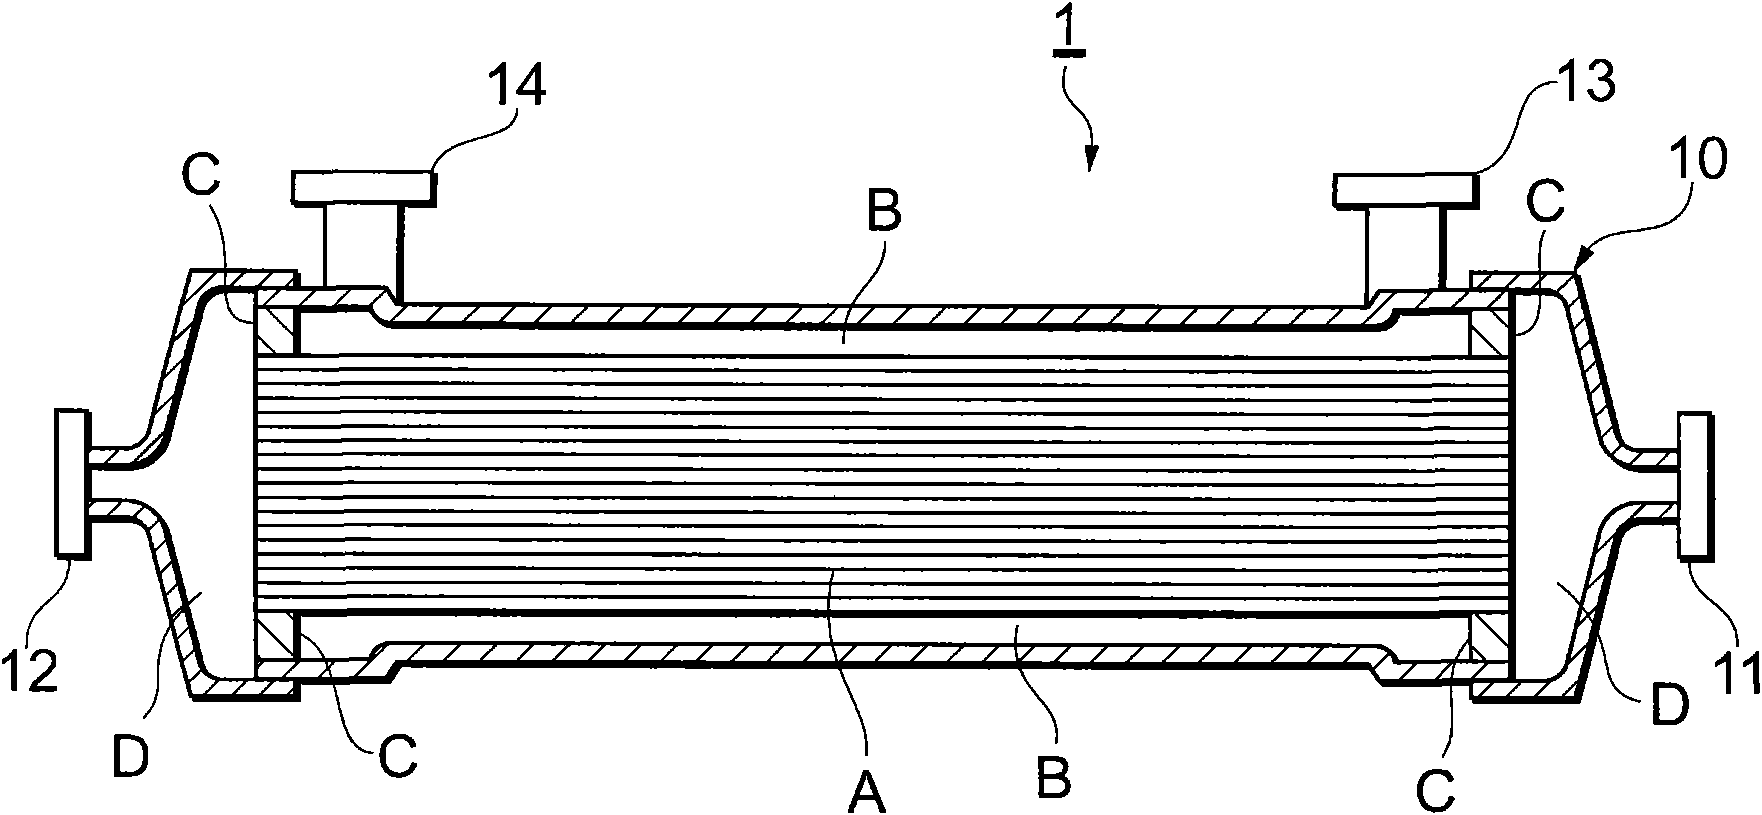 Closure mechanism of a hollow fiber module and hollow fiber module